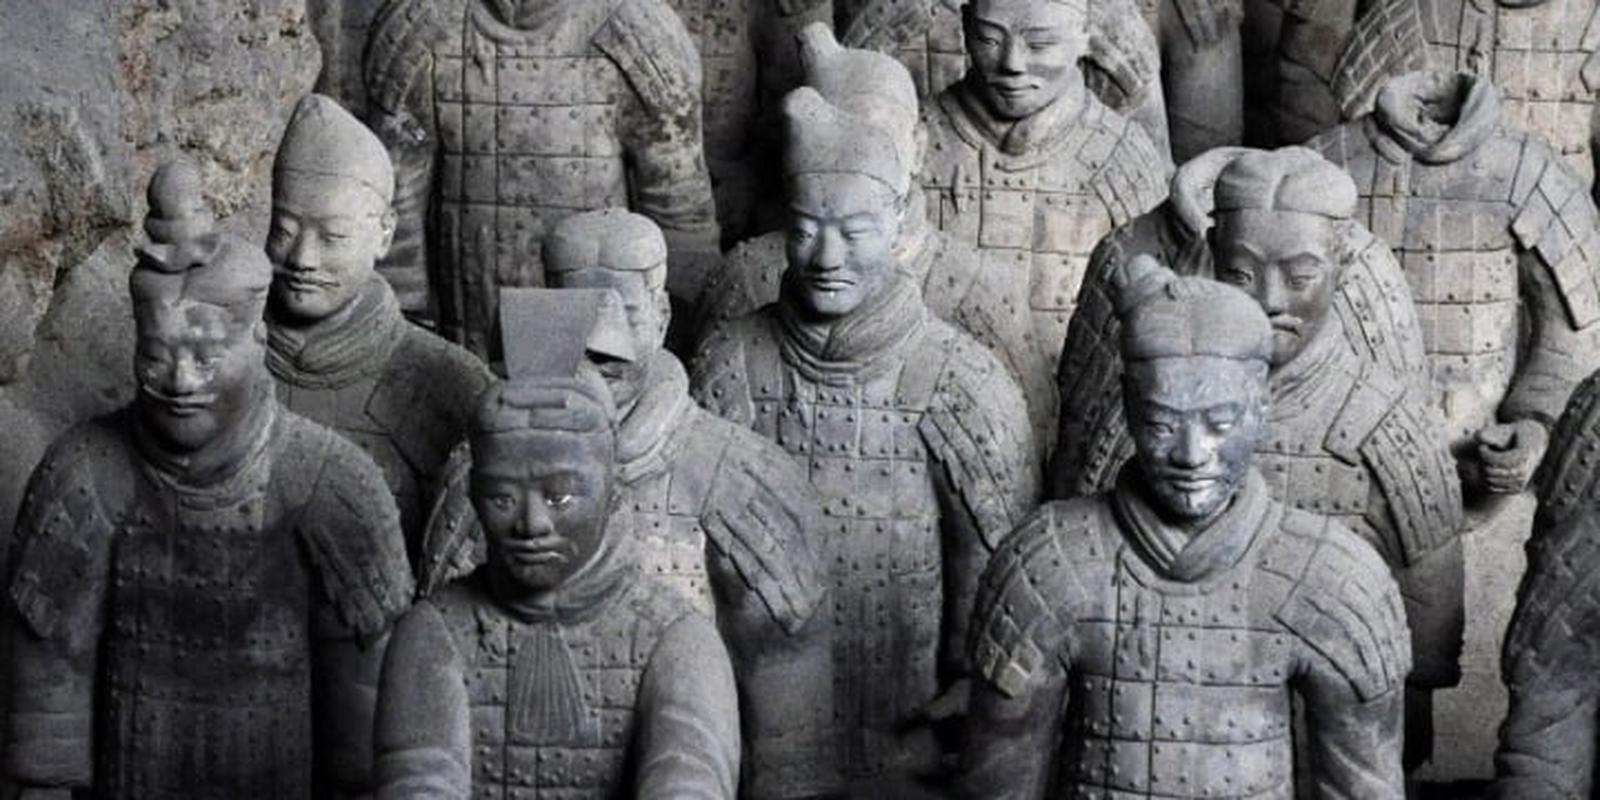             Chiến binh trong lăng mộ Tần Thủy Hoàng bị vỡ, hé lộ bí mật    